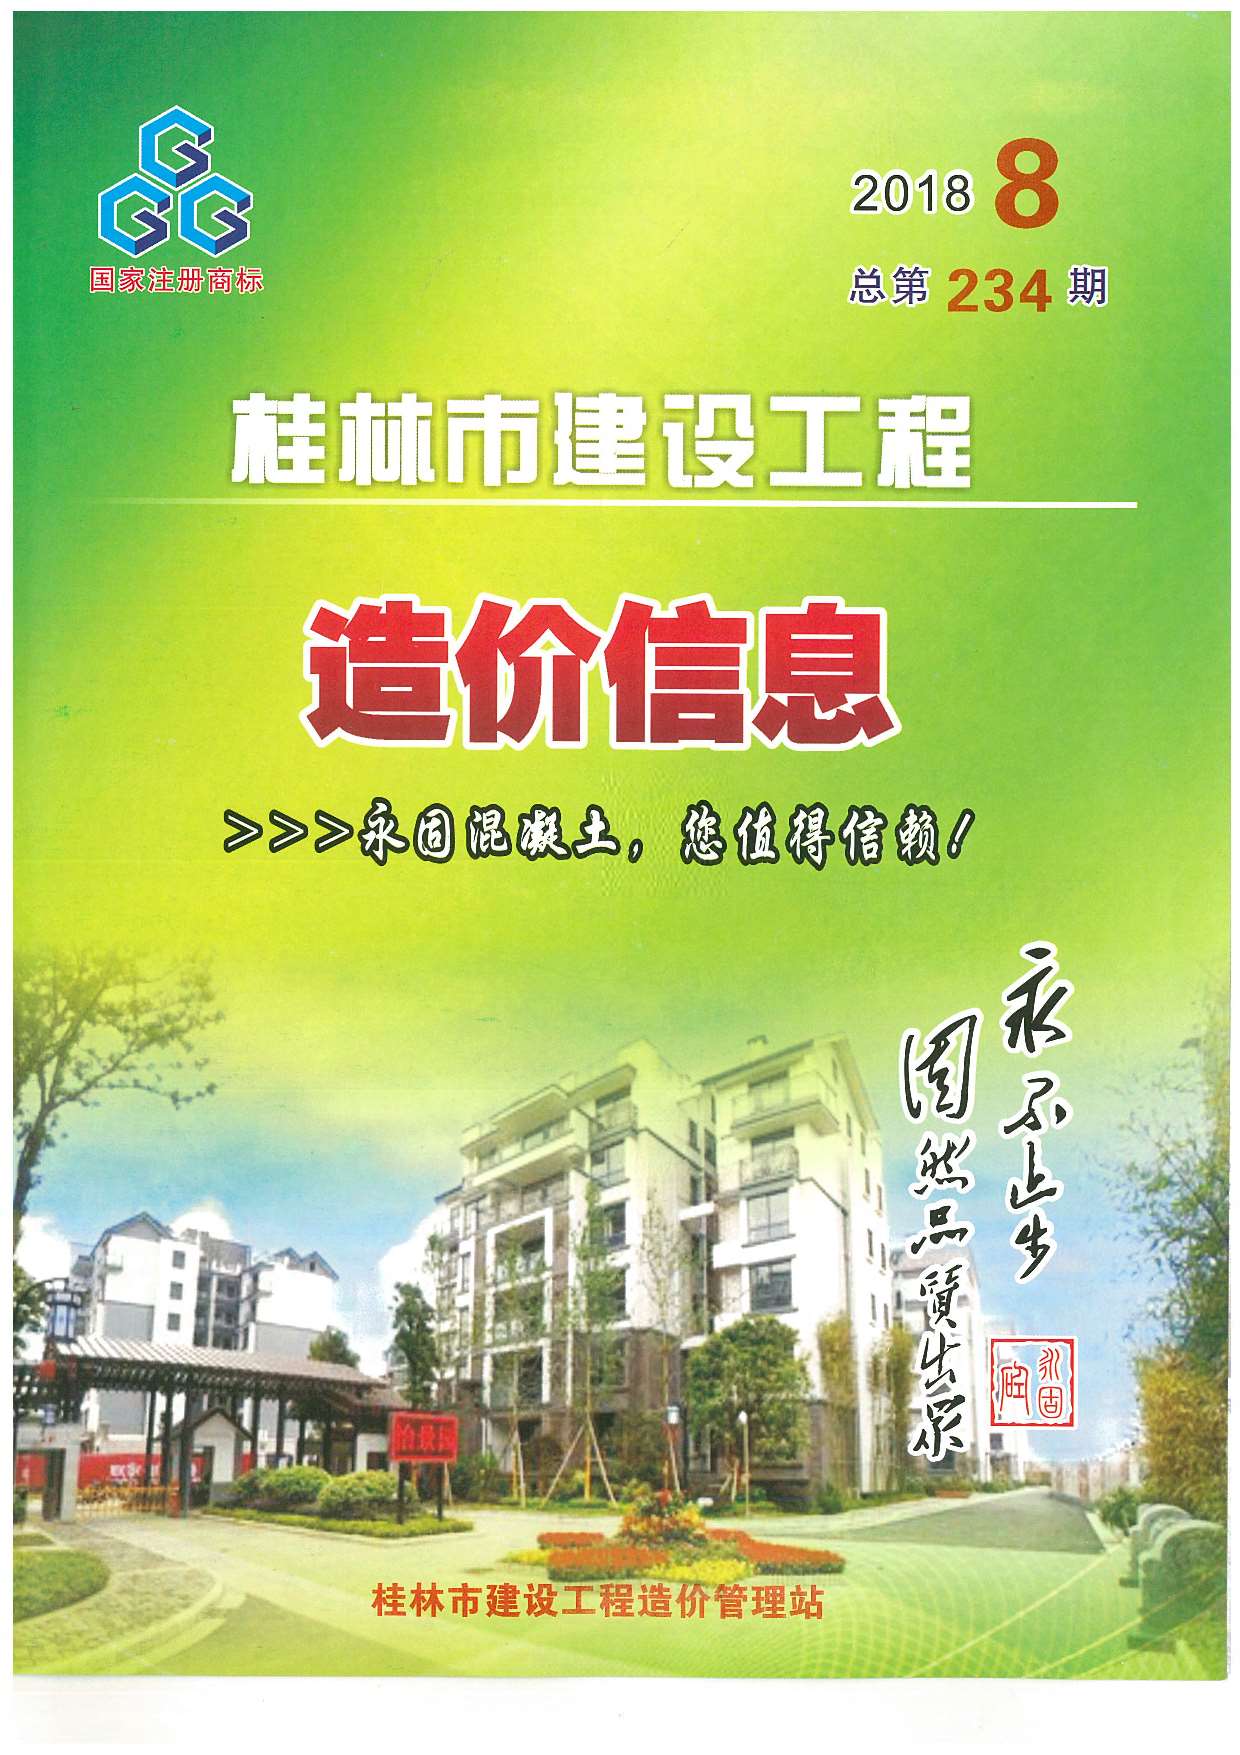 桂林市2018年8月建设工程造价信息